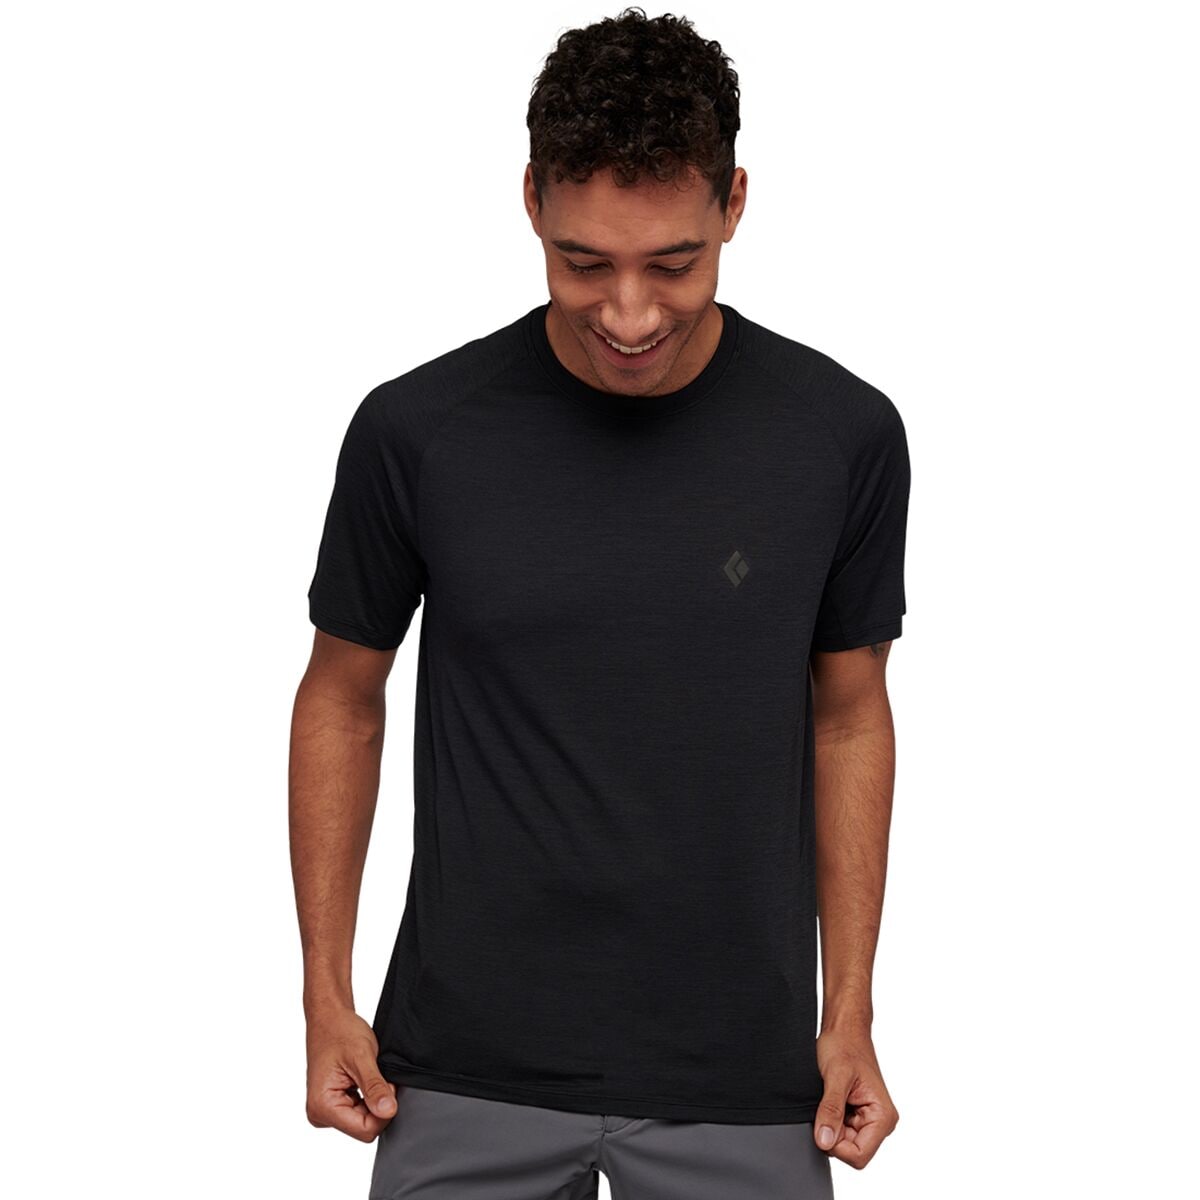 Lightwire Short-Sleeve Tech T-Shirt - Men